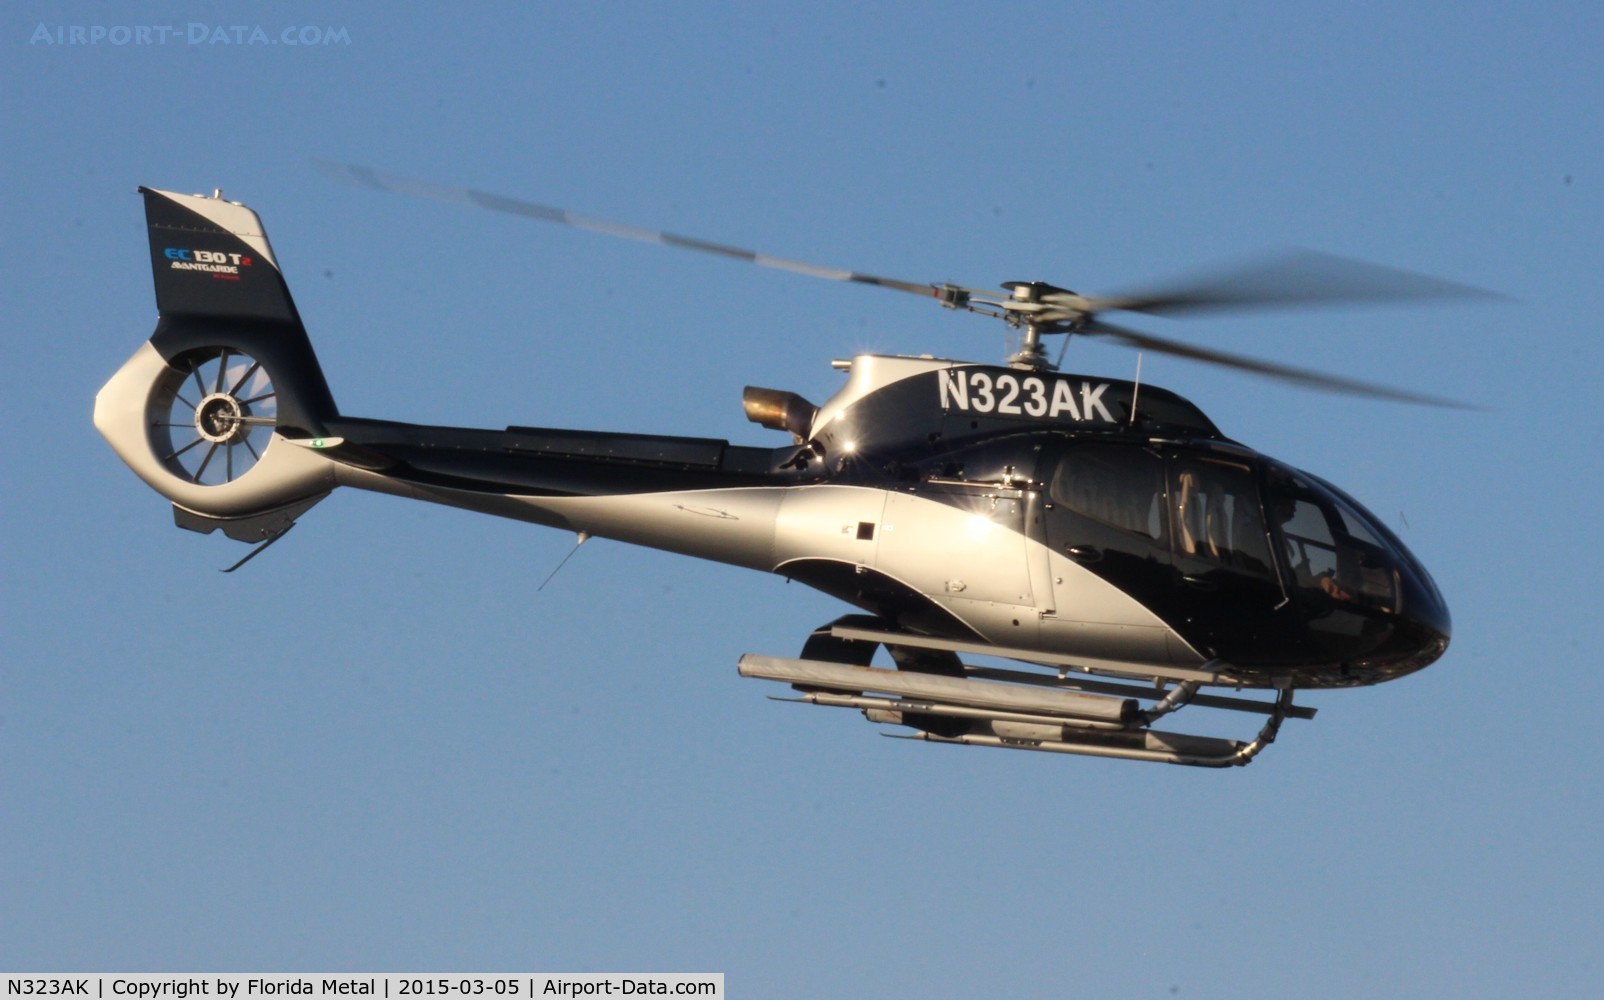 N323AK, 2014 Airbus Helicopters EC-130T-2 C/N 7962, Heliexpo 2015